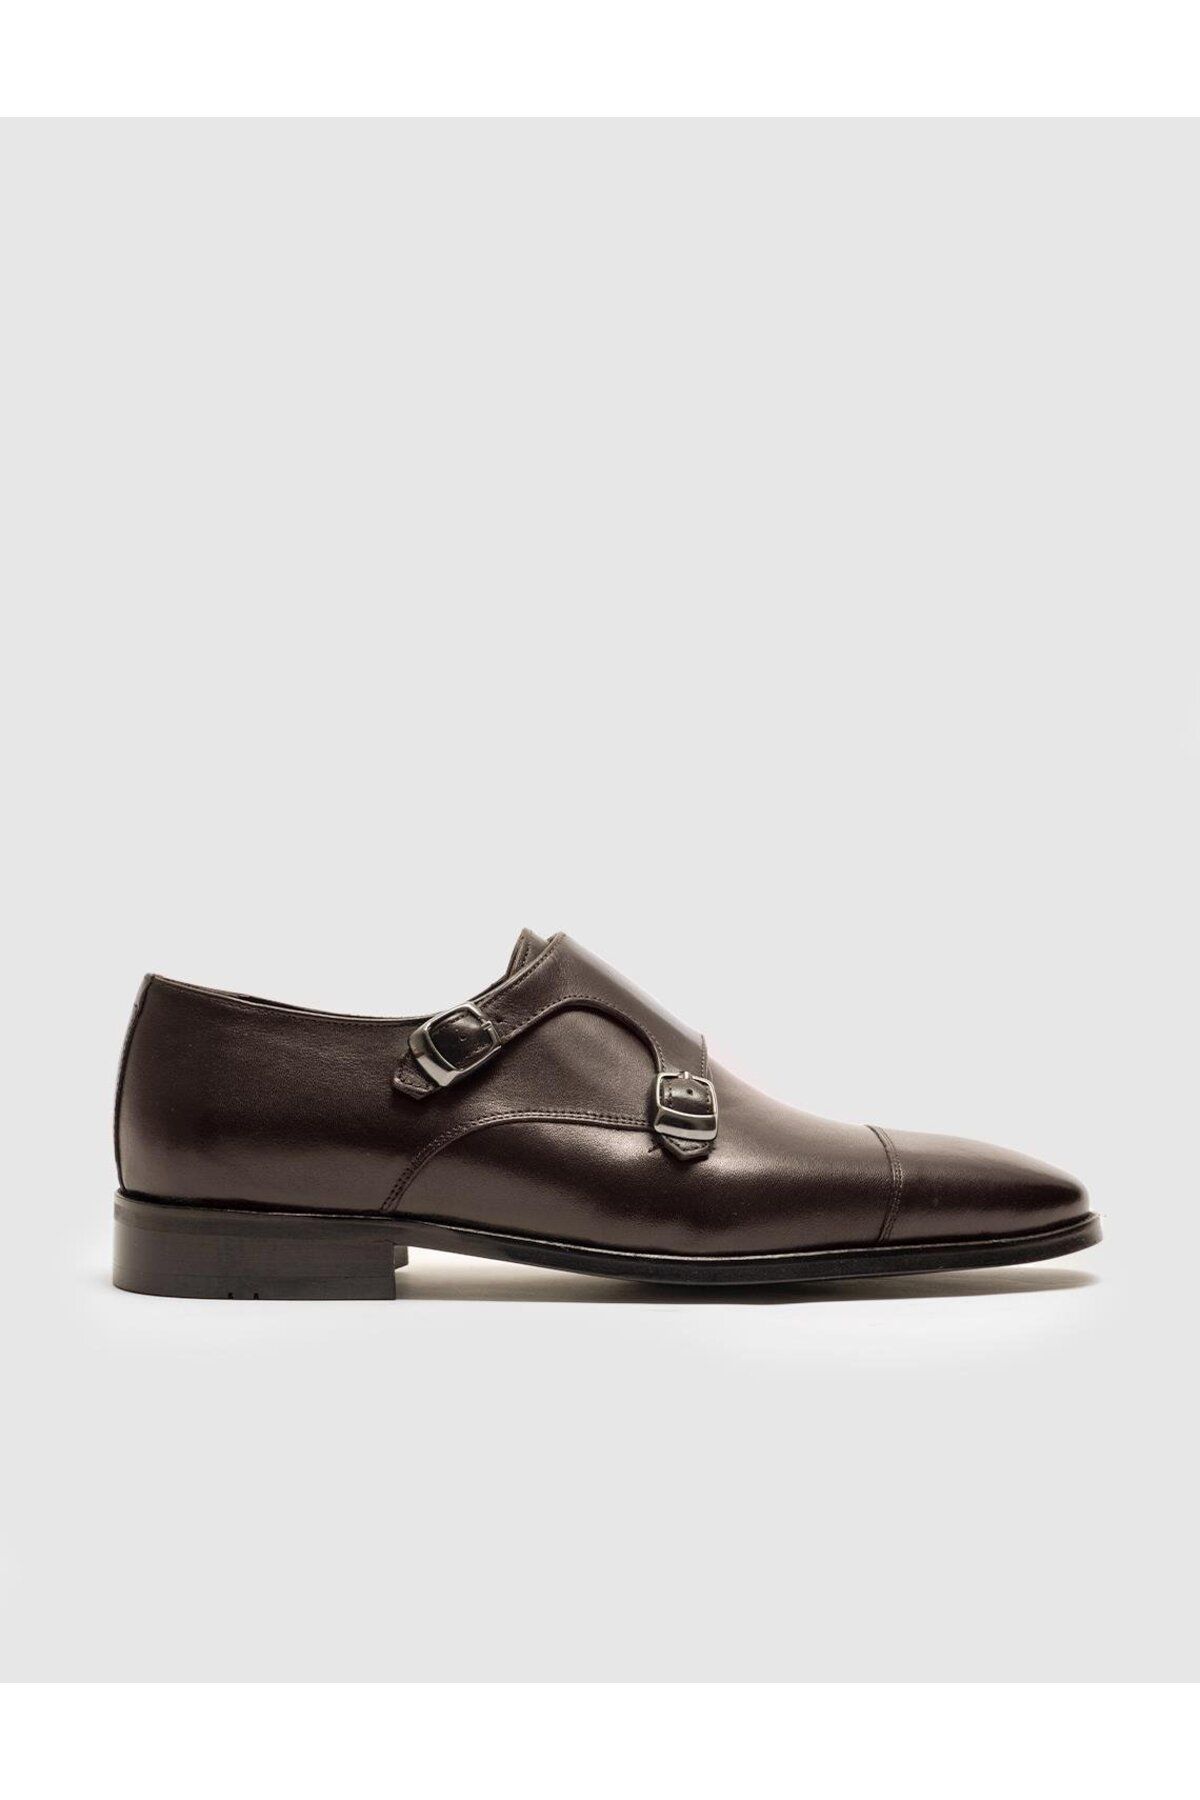 Cabani Hakiki Deri Kahverengi Çift Tokalı Erkek Klasik Ayakkabı